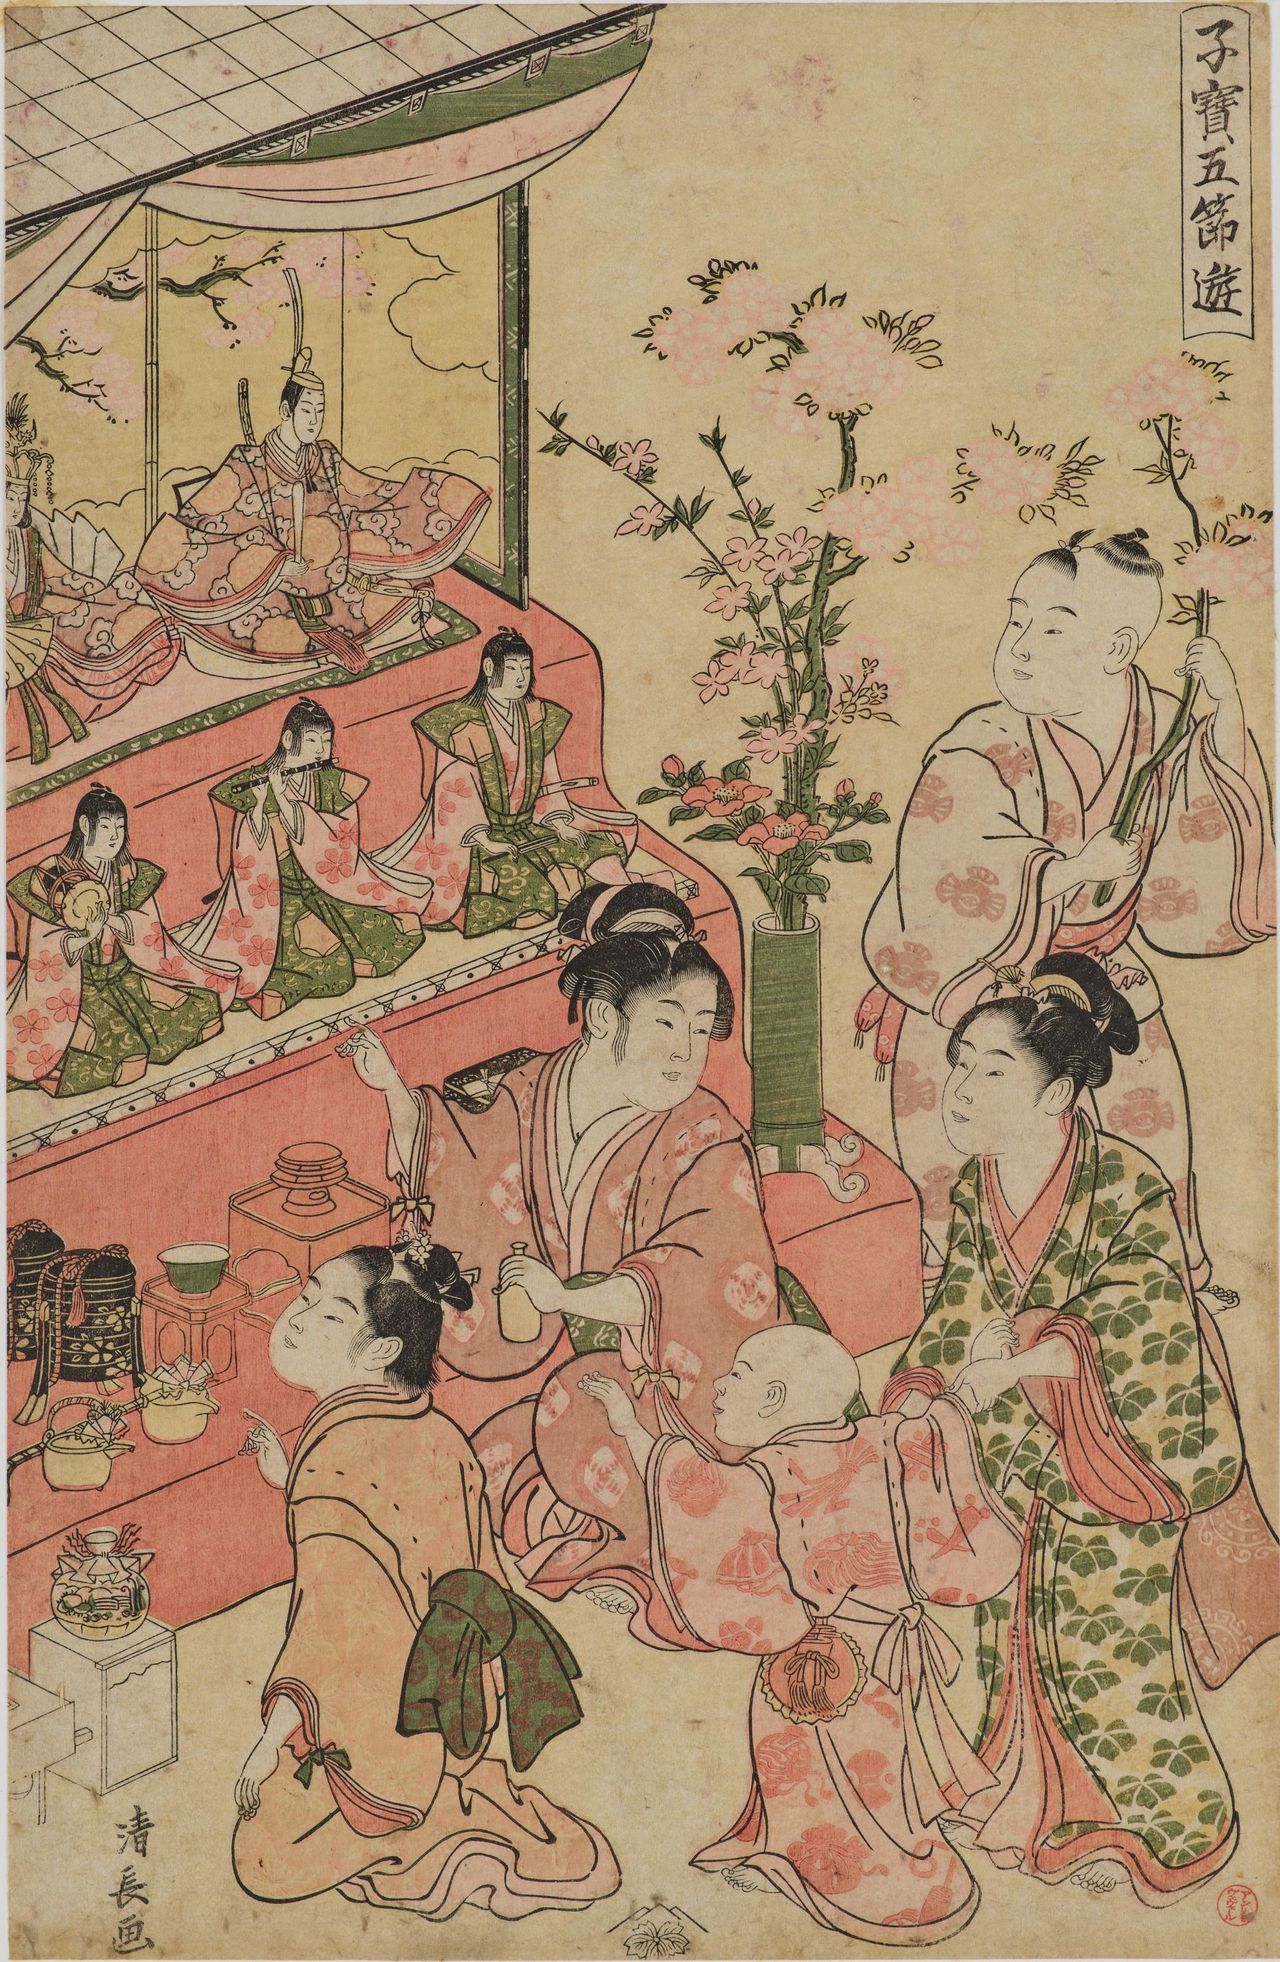 «Развлечения драгоценных детей пяти сэкку – Хинамацури» (Кодакара госэцу асоби хинамацури), гравюра укиё-э XVIII века Тории Киёнага. В отличие от нынешних выставок кукол Хина-кадзари, справа установлена кукла-мужчина (обина), слева – кукла-женщина (мэбина); под ними не три придворные дамы, а пятеро мезыкантов хаяси (коллекция Токийского национального музея, источник: Colbase)